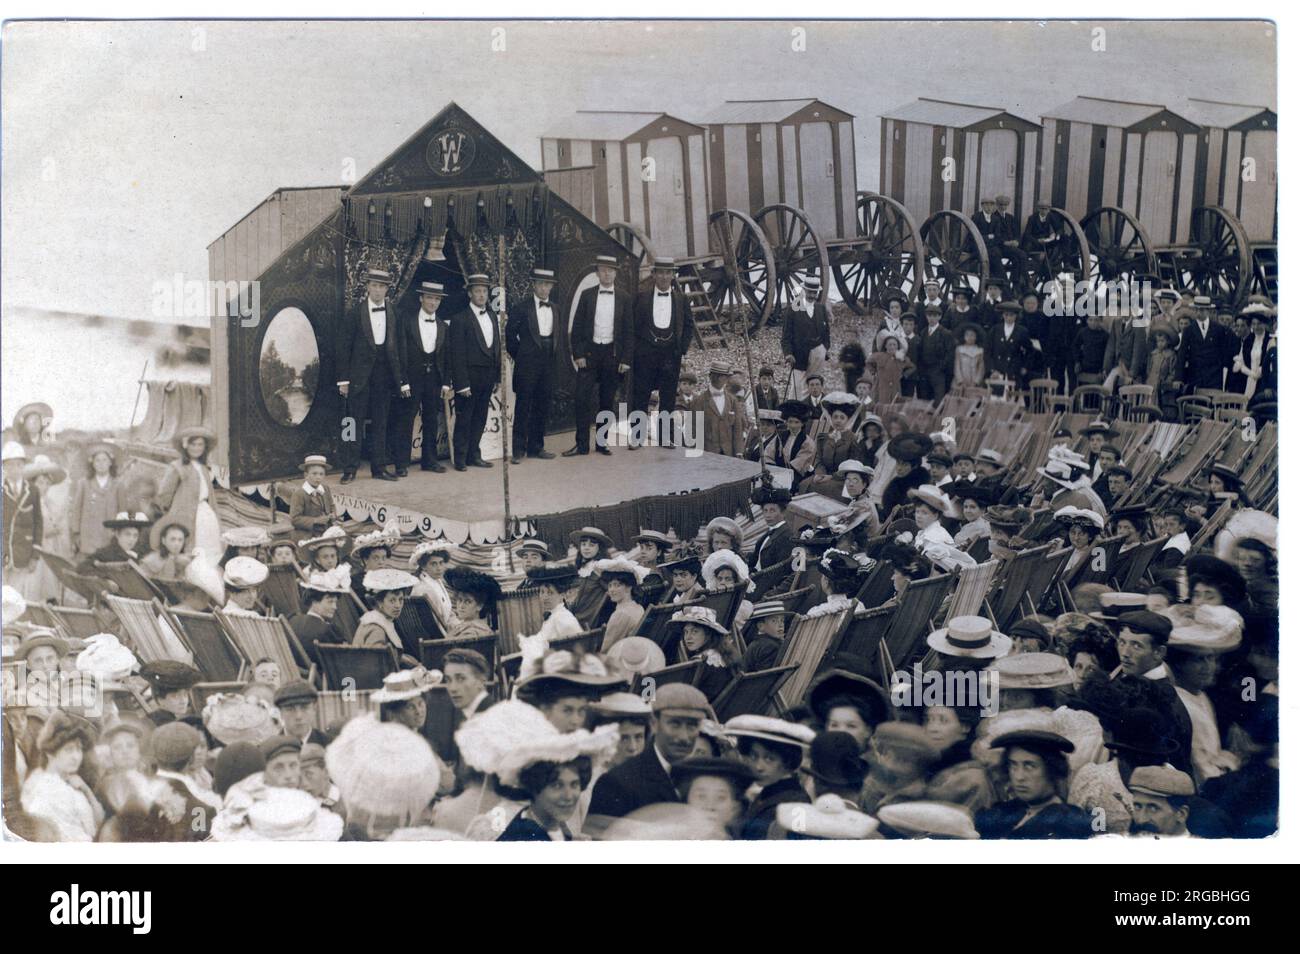 Dieses hervorragende Bild zeigt sechs Kostüme mit Strohhüten auf der Bühne vor einem Publikum mit Deck-Vorsitz. Behined The Stage sind fünf rollende Strandhütten in gestreifter Lackierung. Stockfoto